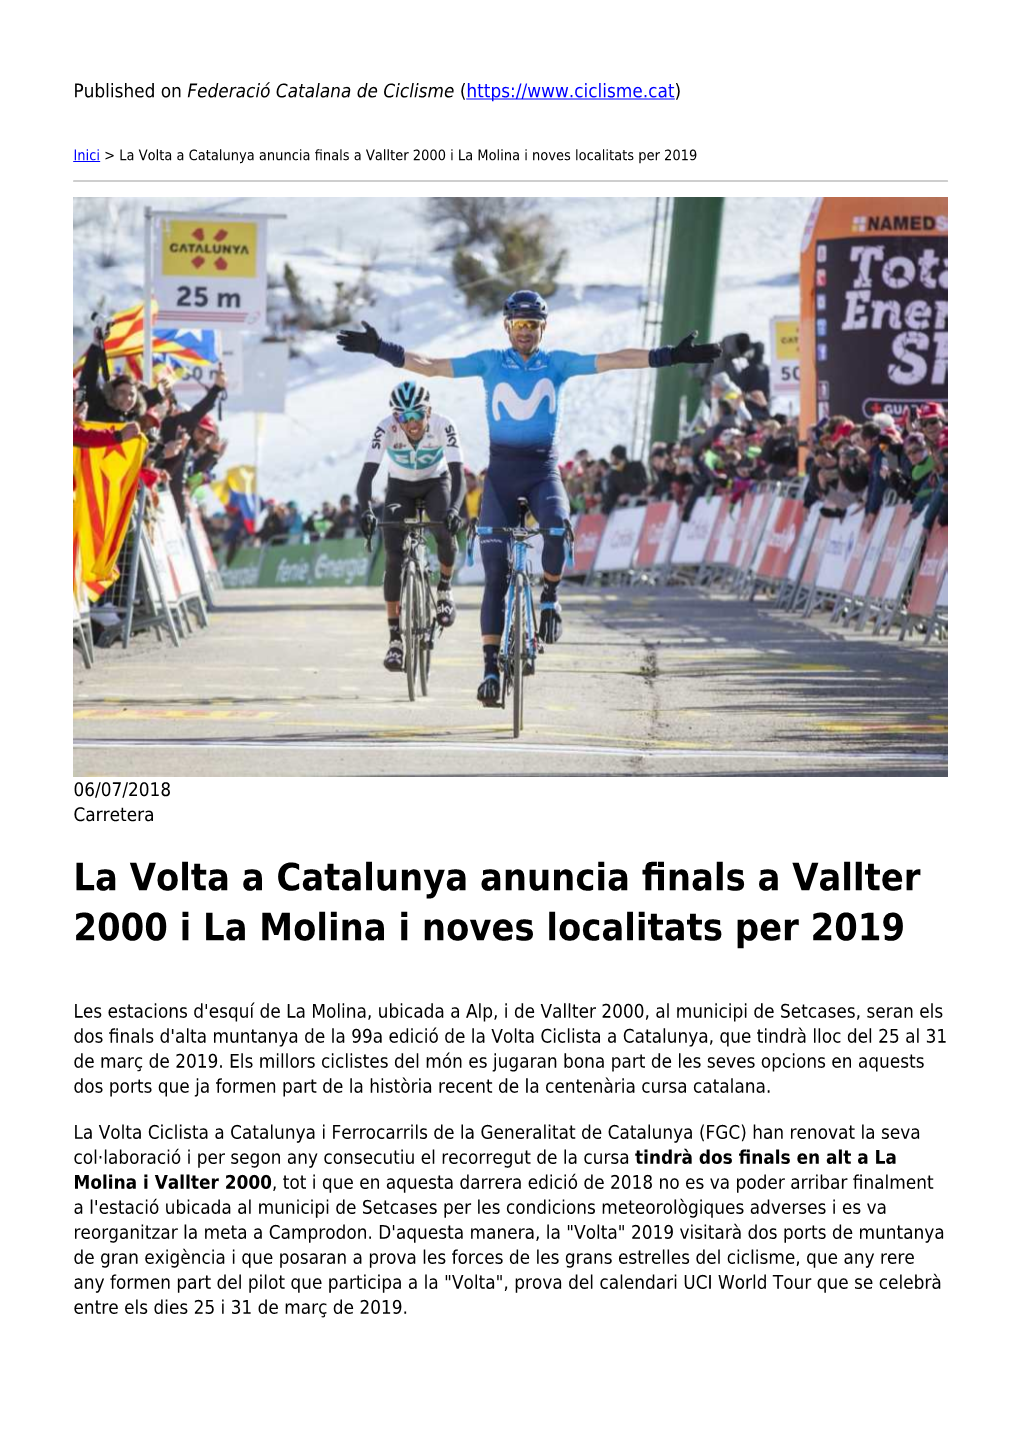 La Volta a Catalunya Anuncia Finals a Vallter 2000 I La Molina I Noves Localitats Per 2019